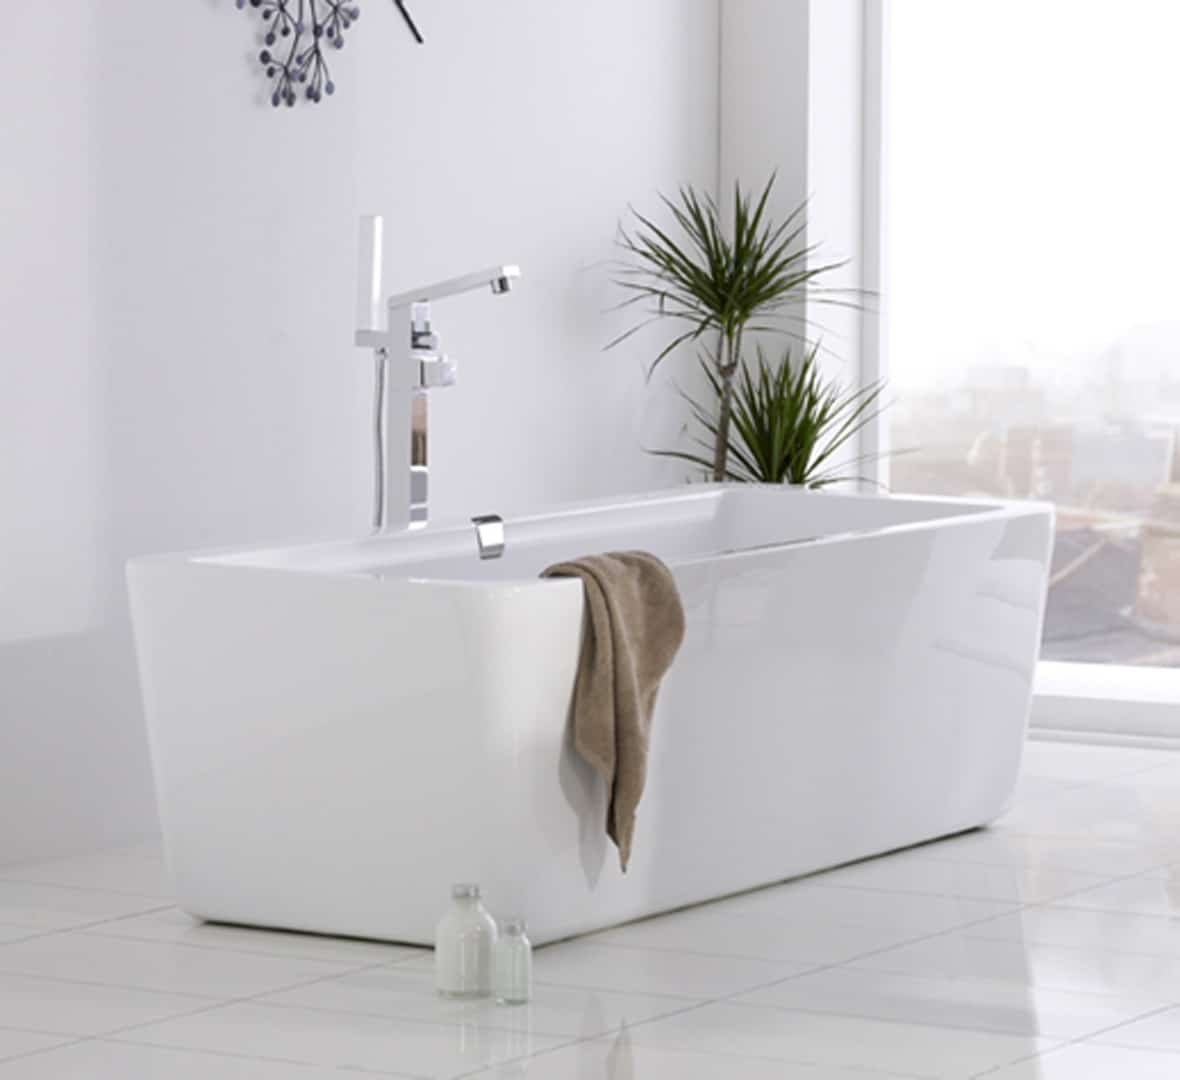 Baignoire rectangulaire blanche moderne dans une salle de bain lumineuse avec une grande fenêtre, des plantes vertes, et un robinet design chromé. Un serviette ma